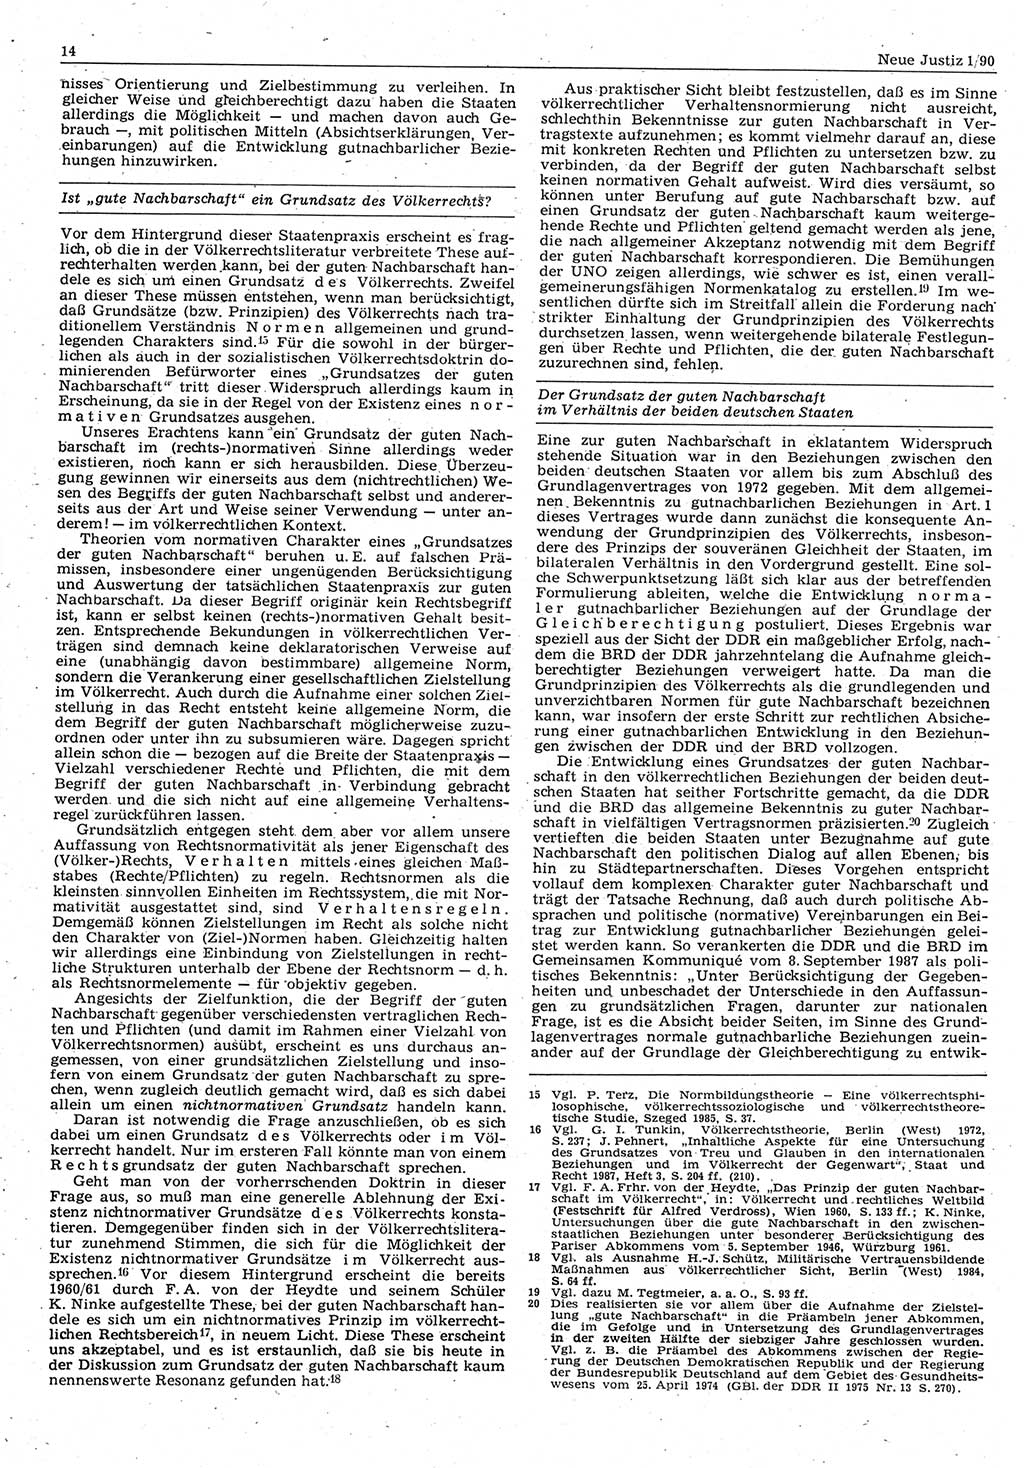 Neue Justiz (NJ), Zeitschrift für Rechtsetzung und Rechtsanwendung [Deutsche Demokratische Republik (DDR)], 44. Jahrgang 1990, Seite 14 (NJ DDR 1990, S. 14)